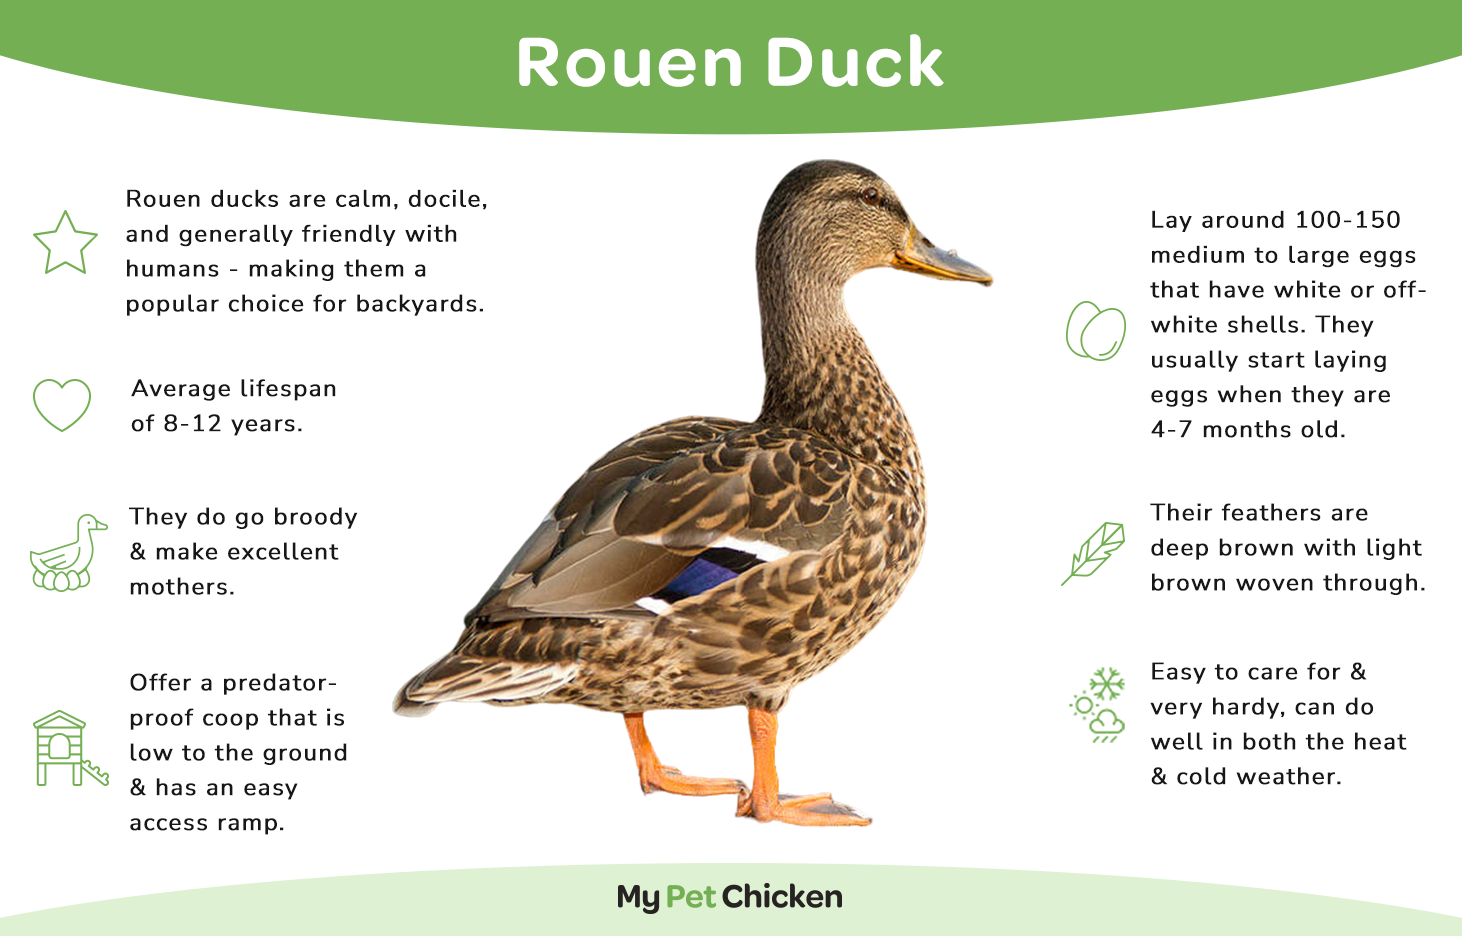 Rouen Duck breed